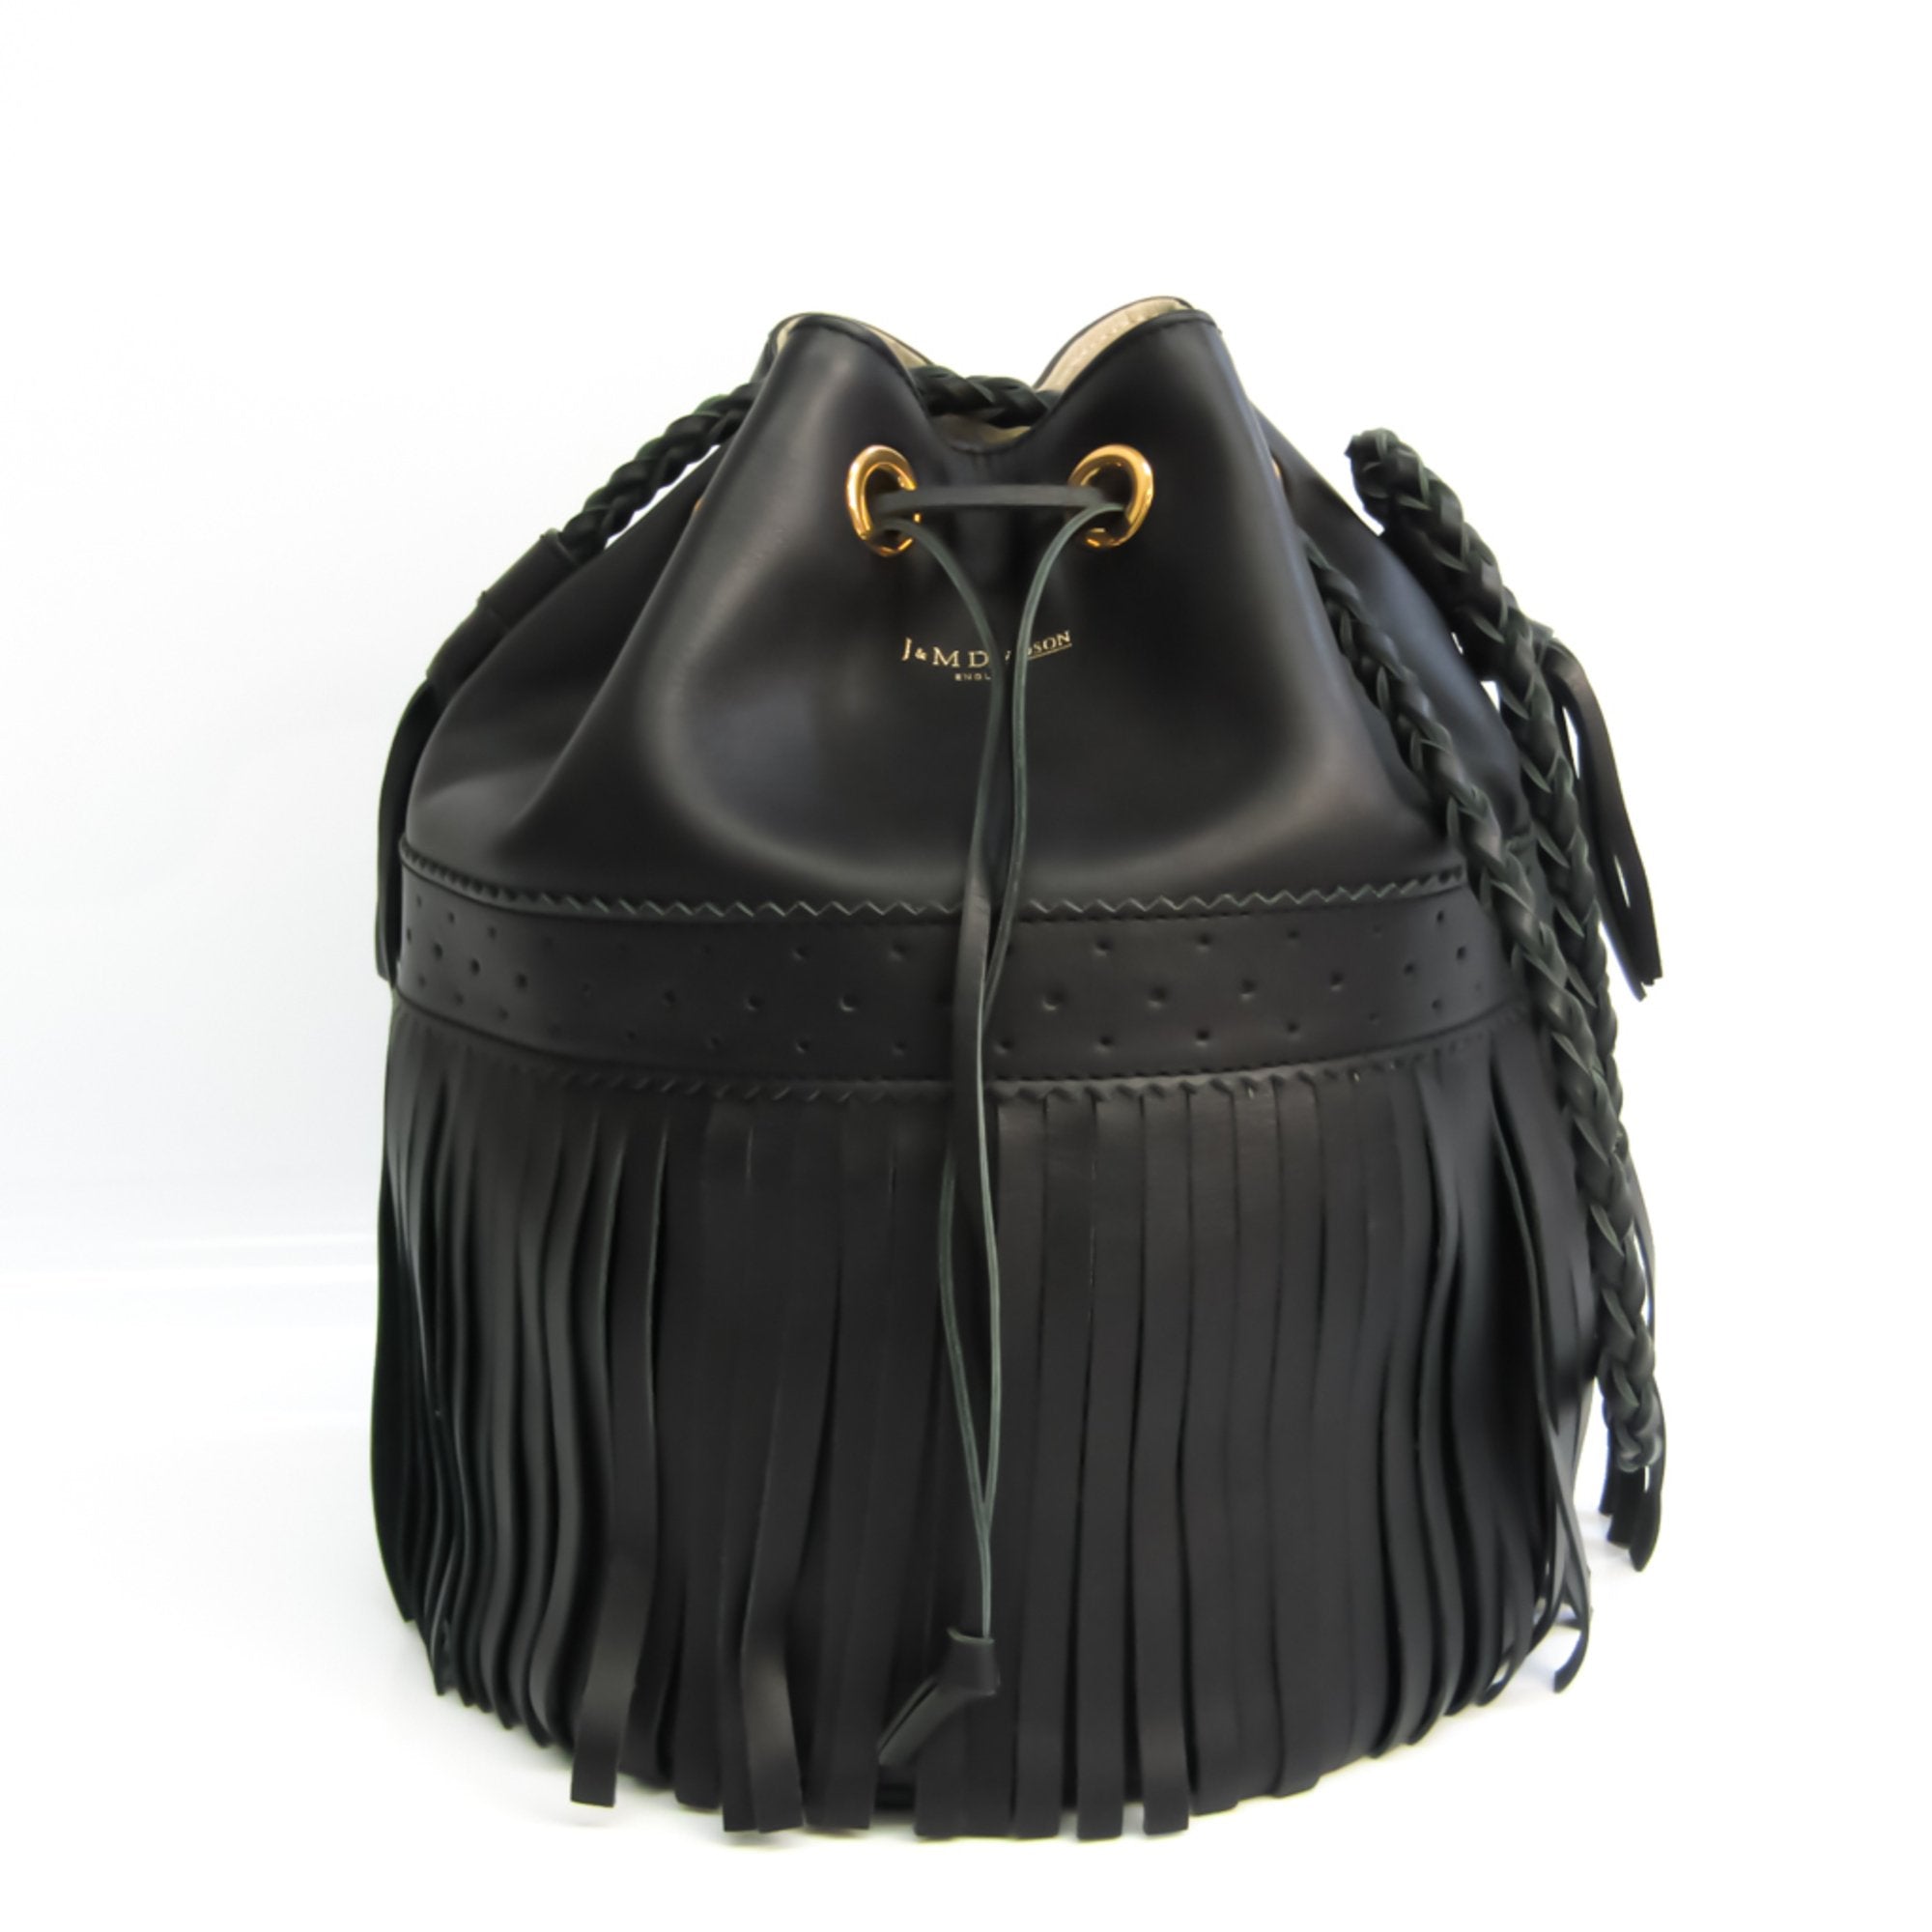 j&m davidson carnival l women's leather shoulder bag black